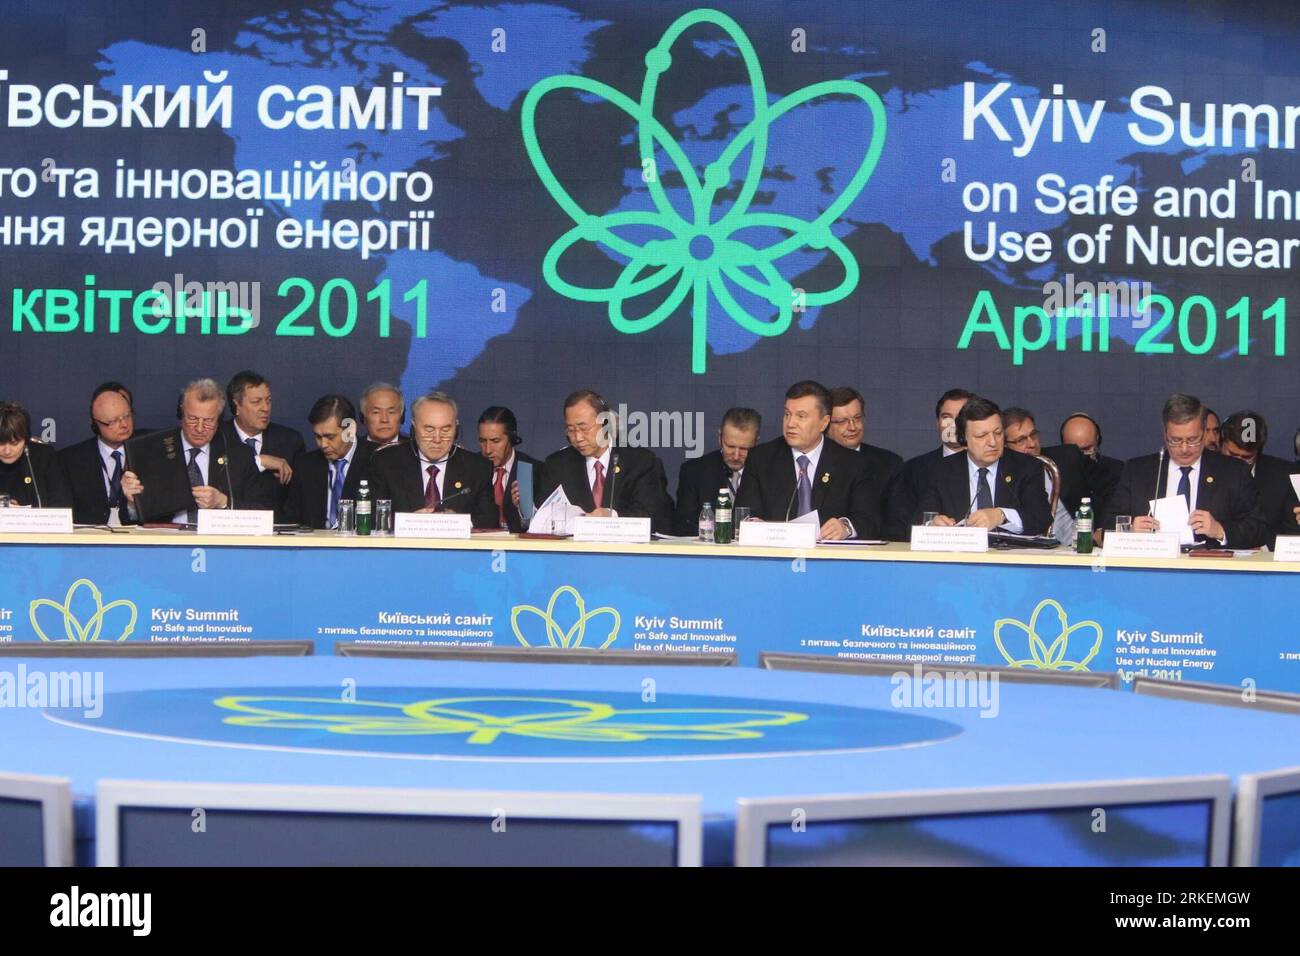 Bildnummer : 55274521 Datum : 19.04.2011 Copyright : imago/Xinhua (110419) -- KIEV, 19 avril 2011 (Xinhua) -- des représentants de divers pays et régions participent au Sommet de Kiev sur l'utilisation sûre et innovante de l'énergie nucléaire à Kiev, capitale de l'Ukraine, le 19 avril 2011. (Xinhua/lu Jinbo) (lyi) UKRAINE-KIEV-NUCLEAR-SUMIT PUBLICATIONxNOTxINxCHN Politik People Atomenergie Tschernobylkonferenz Konferenz atomare Sicherheit kbdig xub 2011 quer premiumd Bildnummer 55274521 Date 19 04 2011 Copyright Imago XINHUA Kiev avril 19 2011 XINHUA des représentants de différentes nations et régions assistent au Ki Banque D'Images